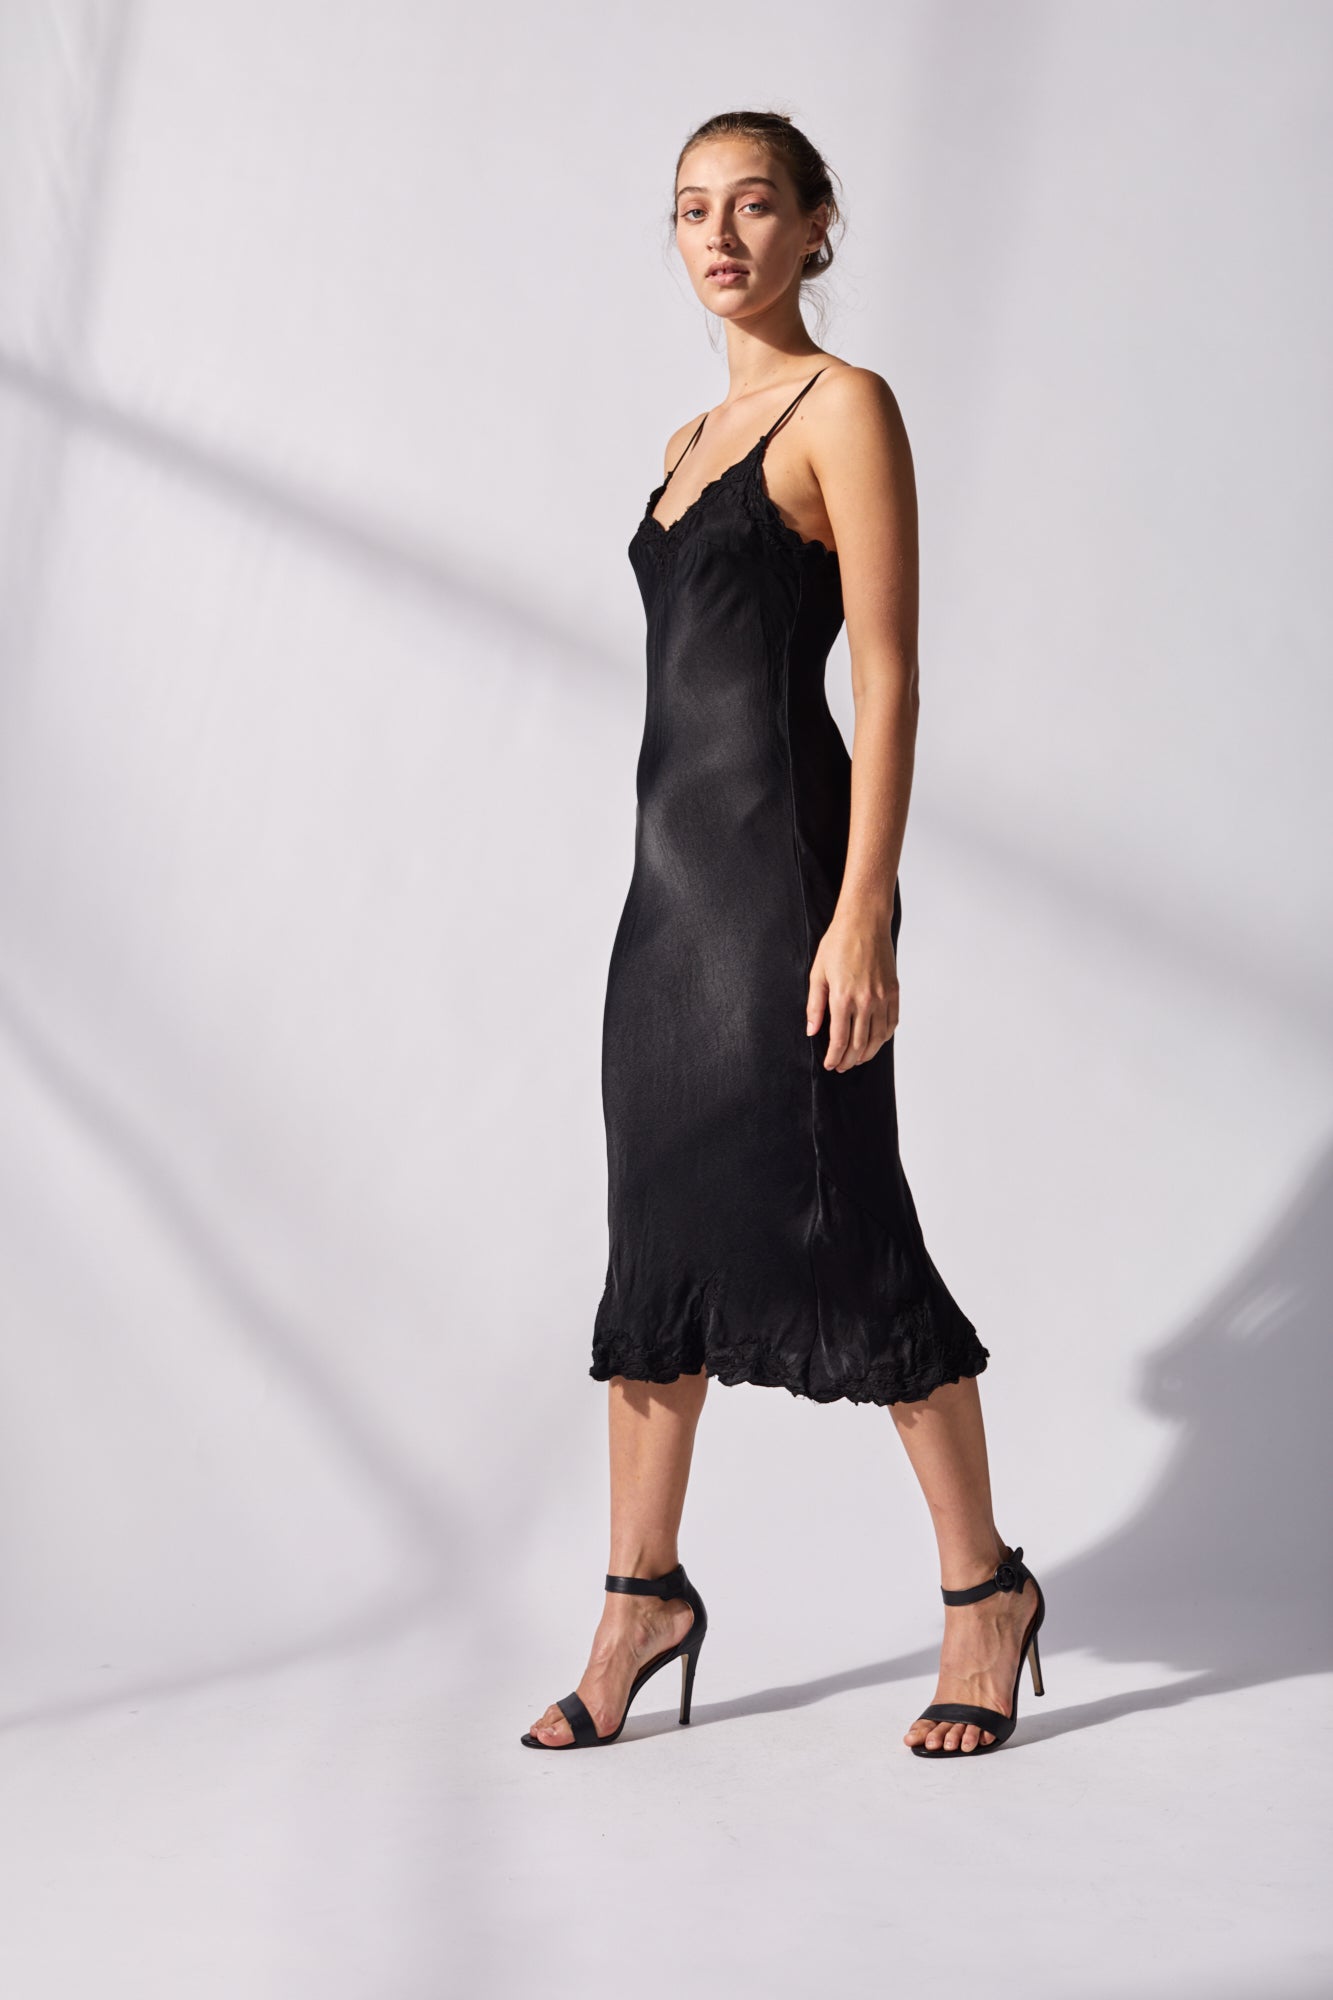 Marilyn Luxe Silk Dress - Rust